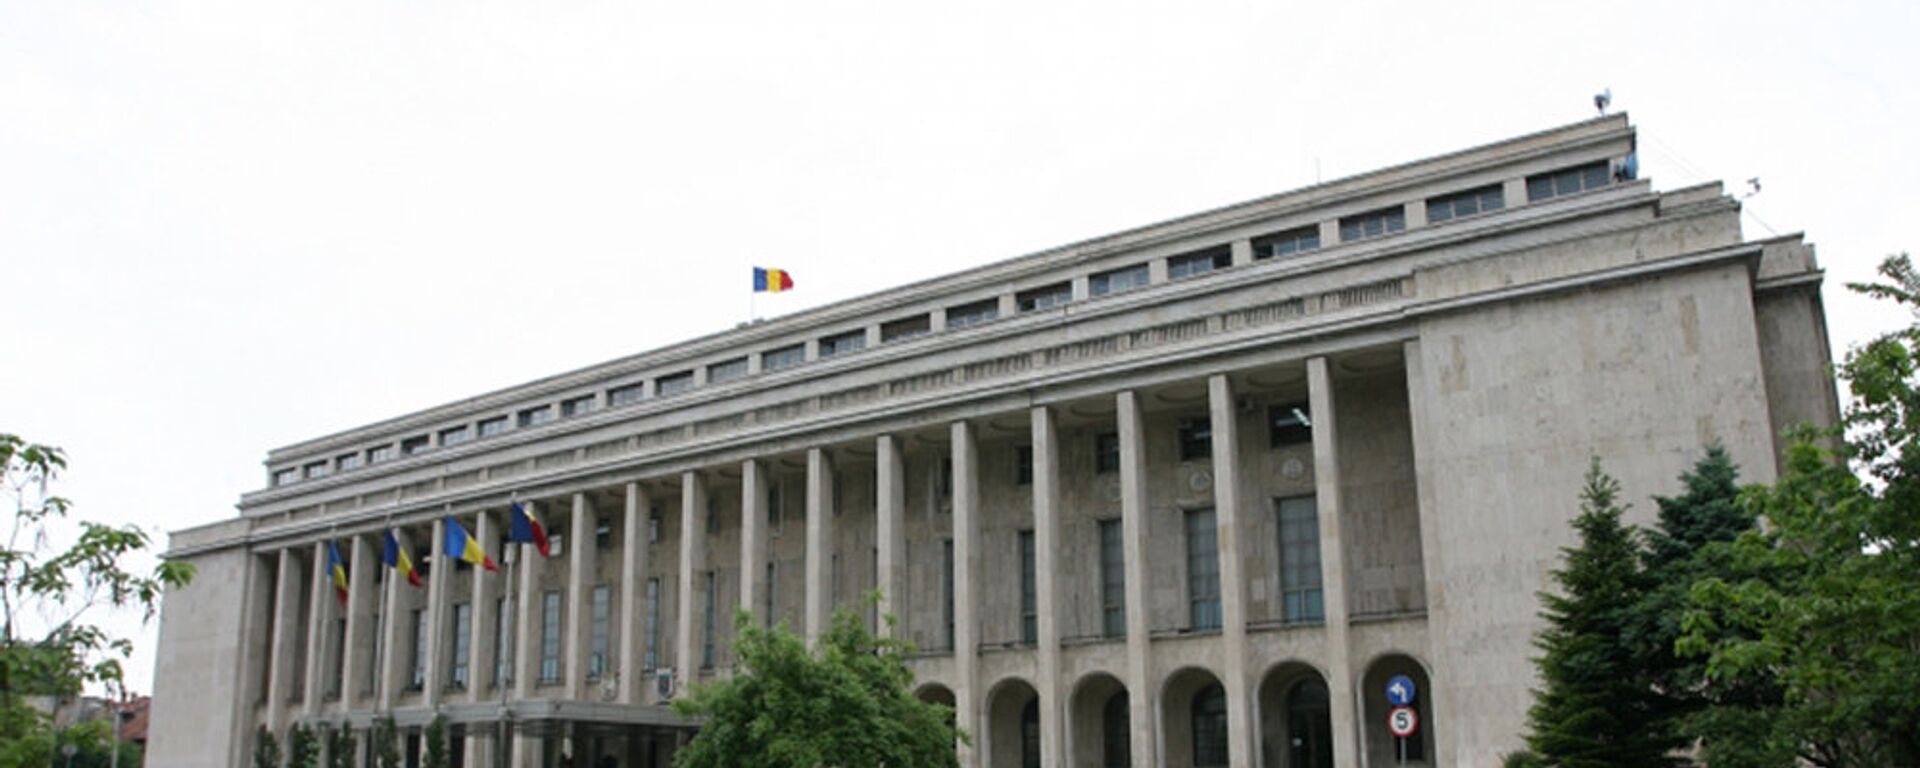 Palatul Victoria - Sputnik Moldova, 1920, 05.10.2021